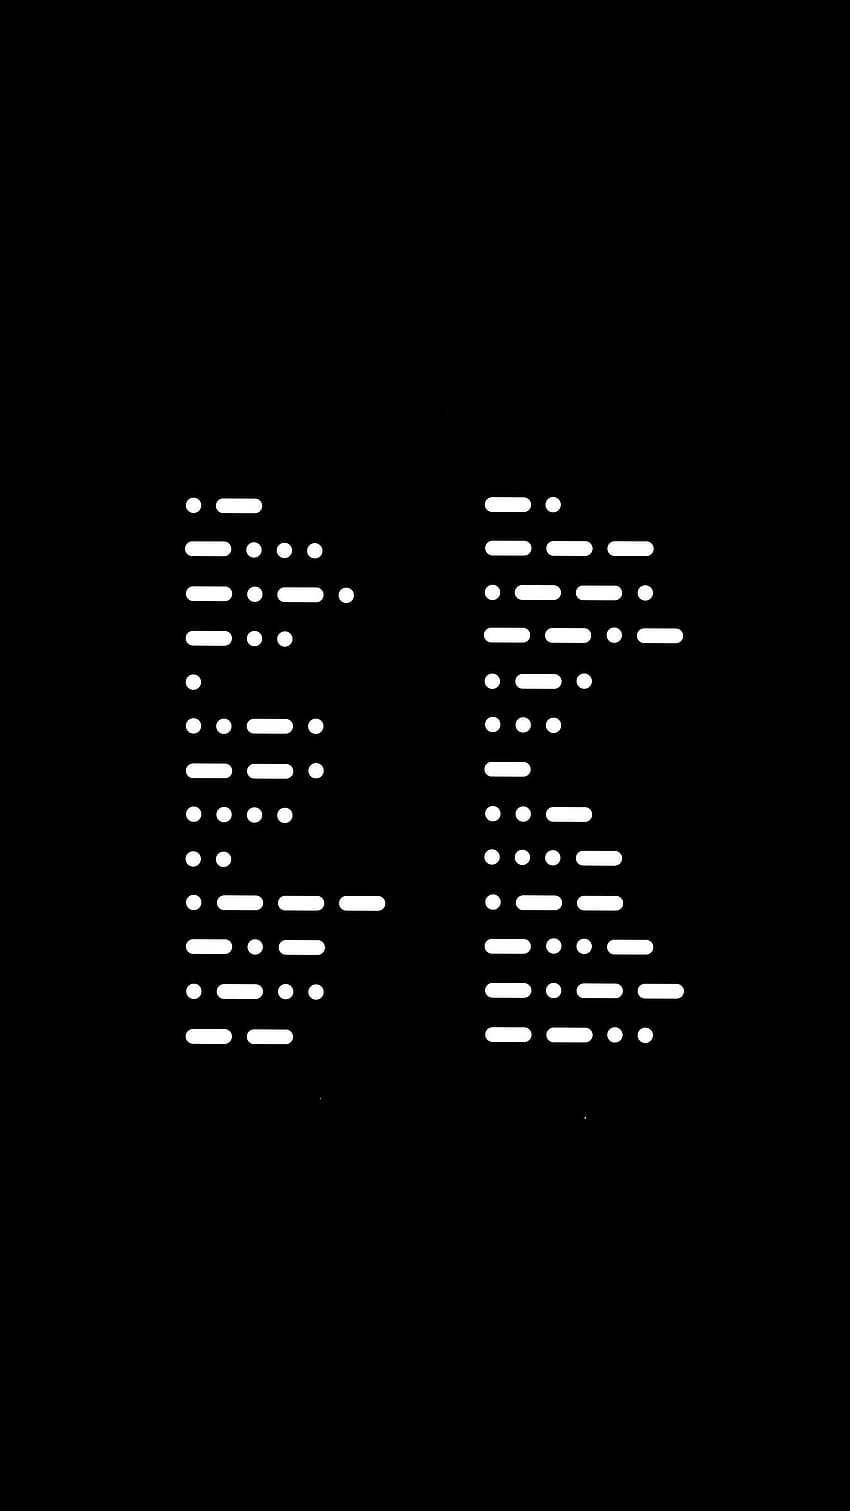 Solo aprendí el código Morse ayer, pero hice un teléfono minimalista. fondo de pantalla del teléfono